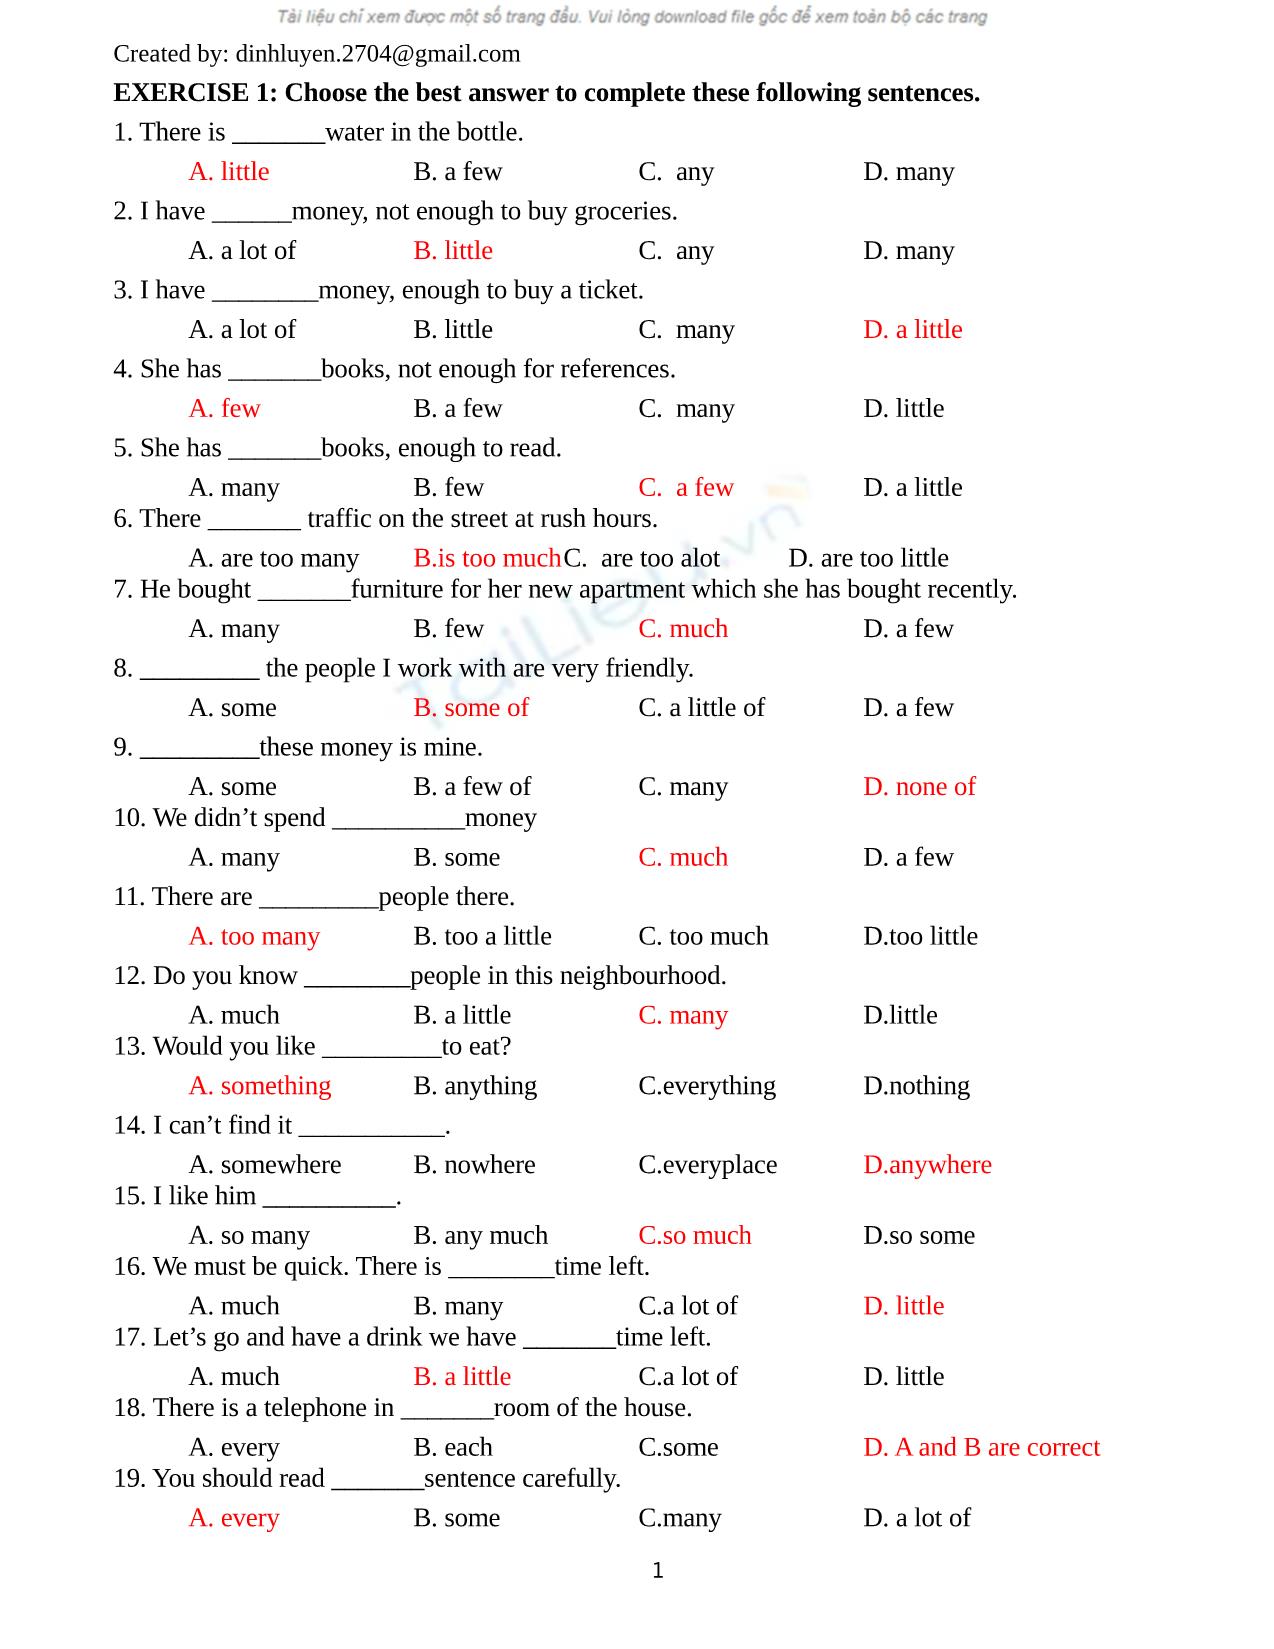 Bài tập trắng nghiệm môn tiếng Anh (Có đáp án) trang 1